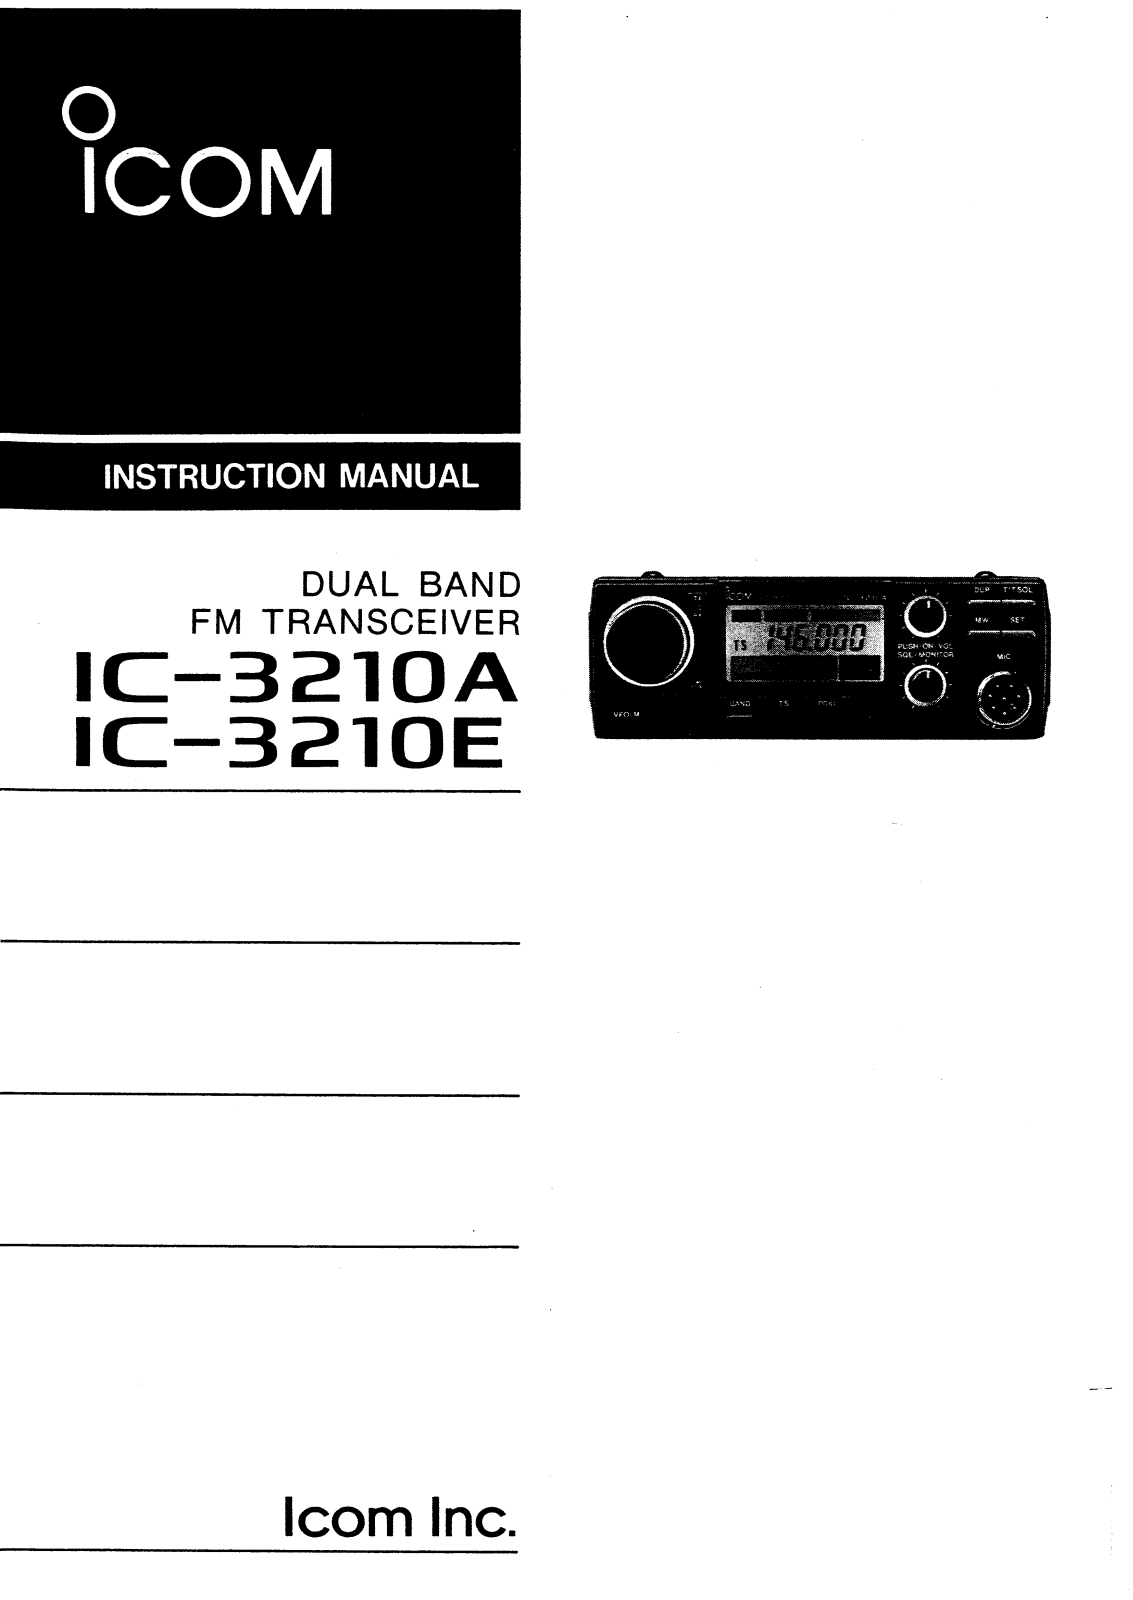 Icom IC-3210A-E User Manual